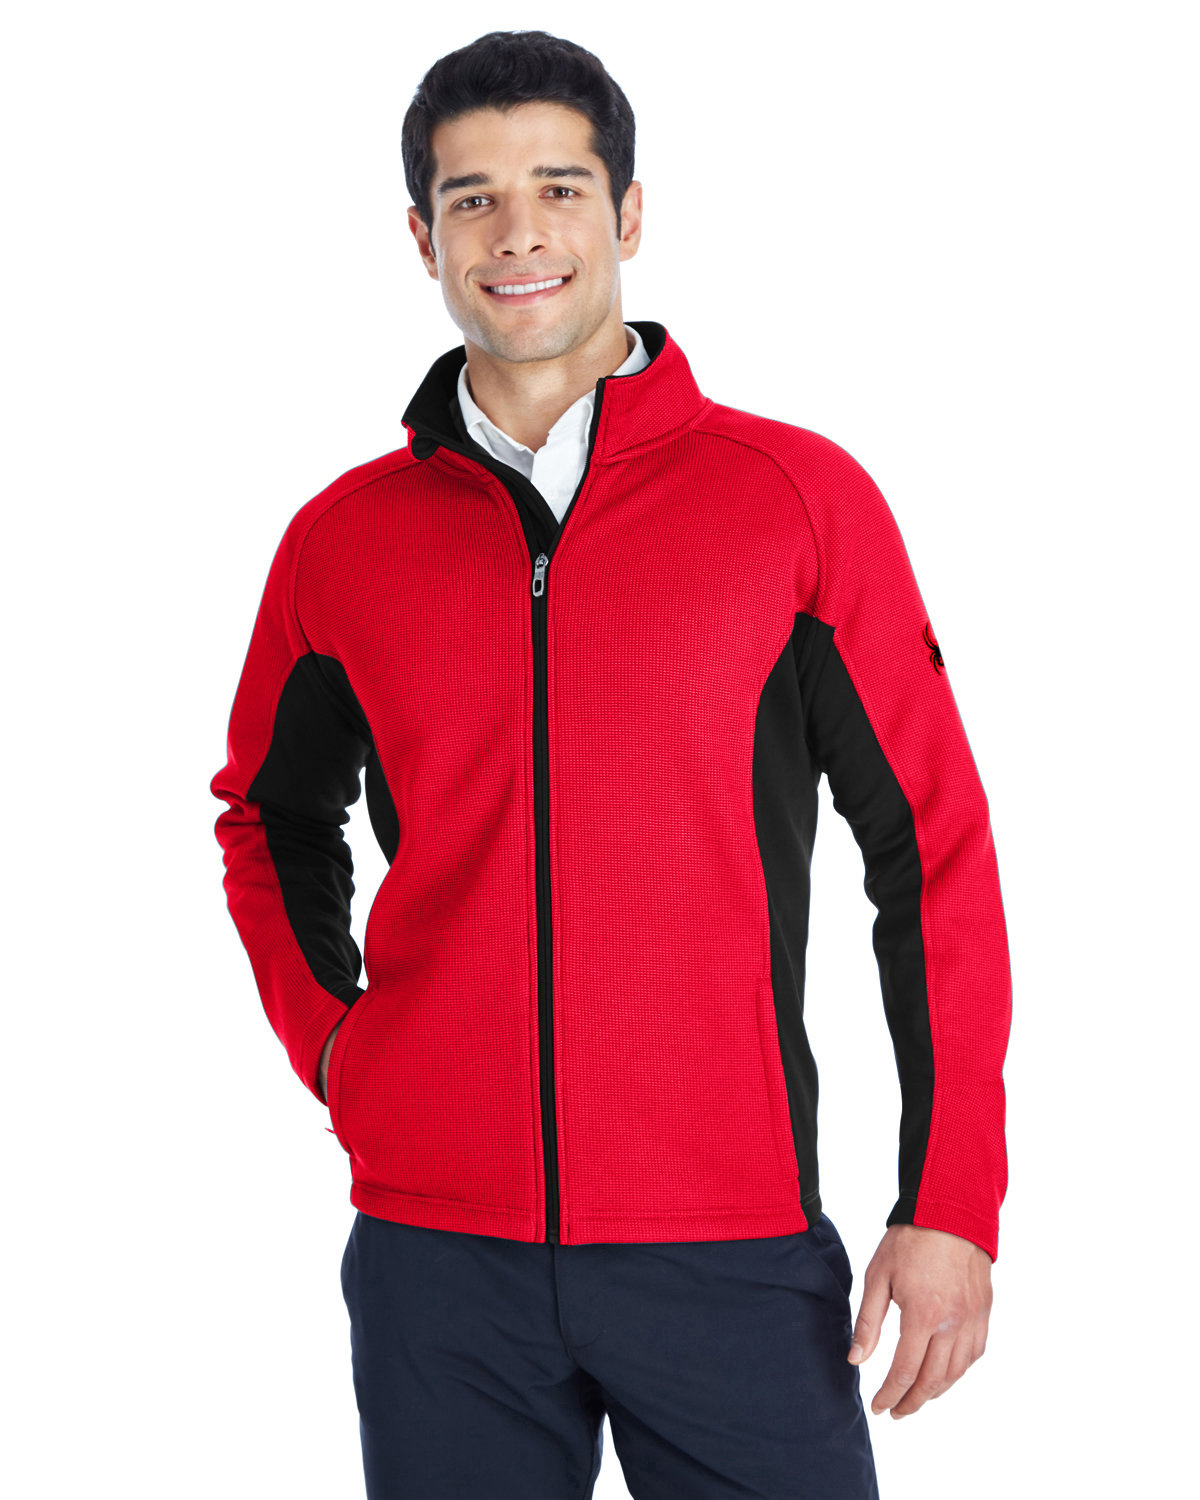 Spyder Men's Constant Full-Zip Sweater Fleece Jacket RED/ BLACK/ BLK 